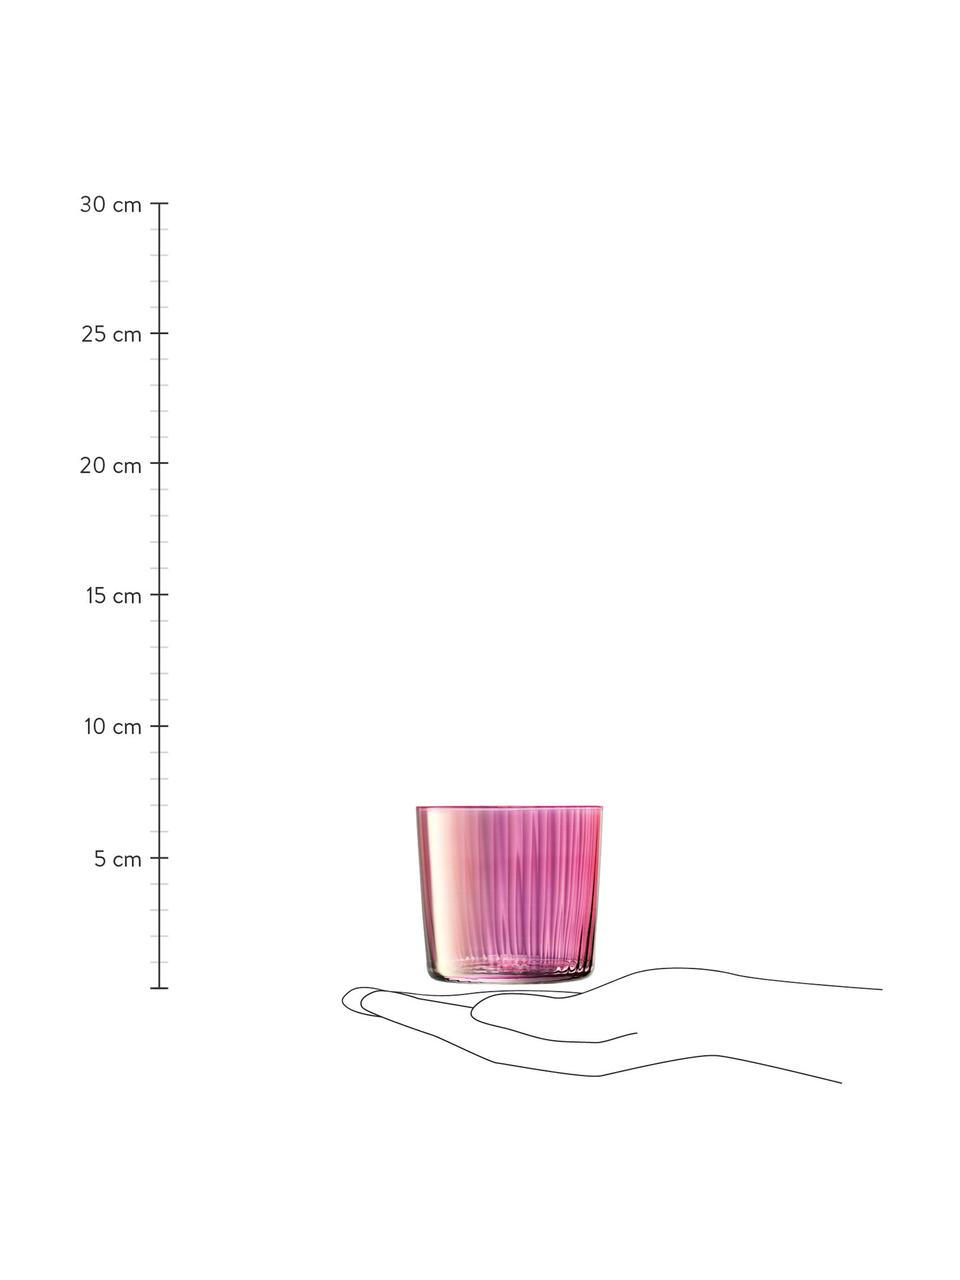 Mondgeblazen waterglazen Gems met groefreliëf, 4-delig, Mondgeblazen glas, Roze- en lilatinten, Ø 8 x H 7 cm, 300 ml